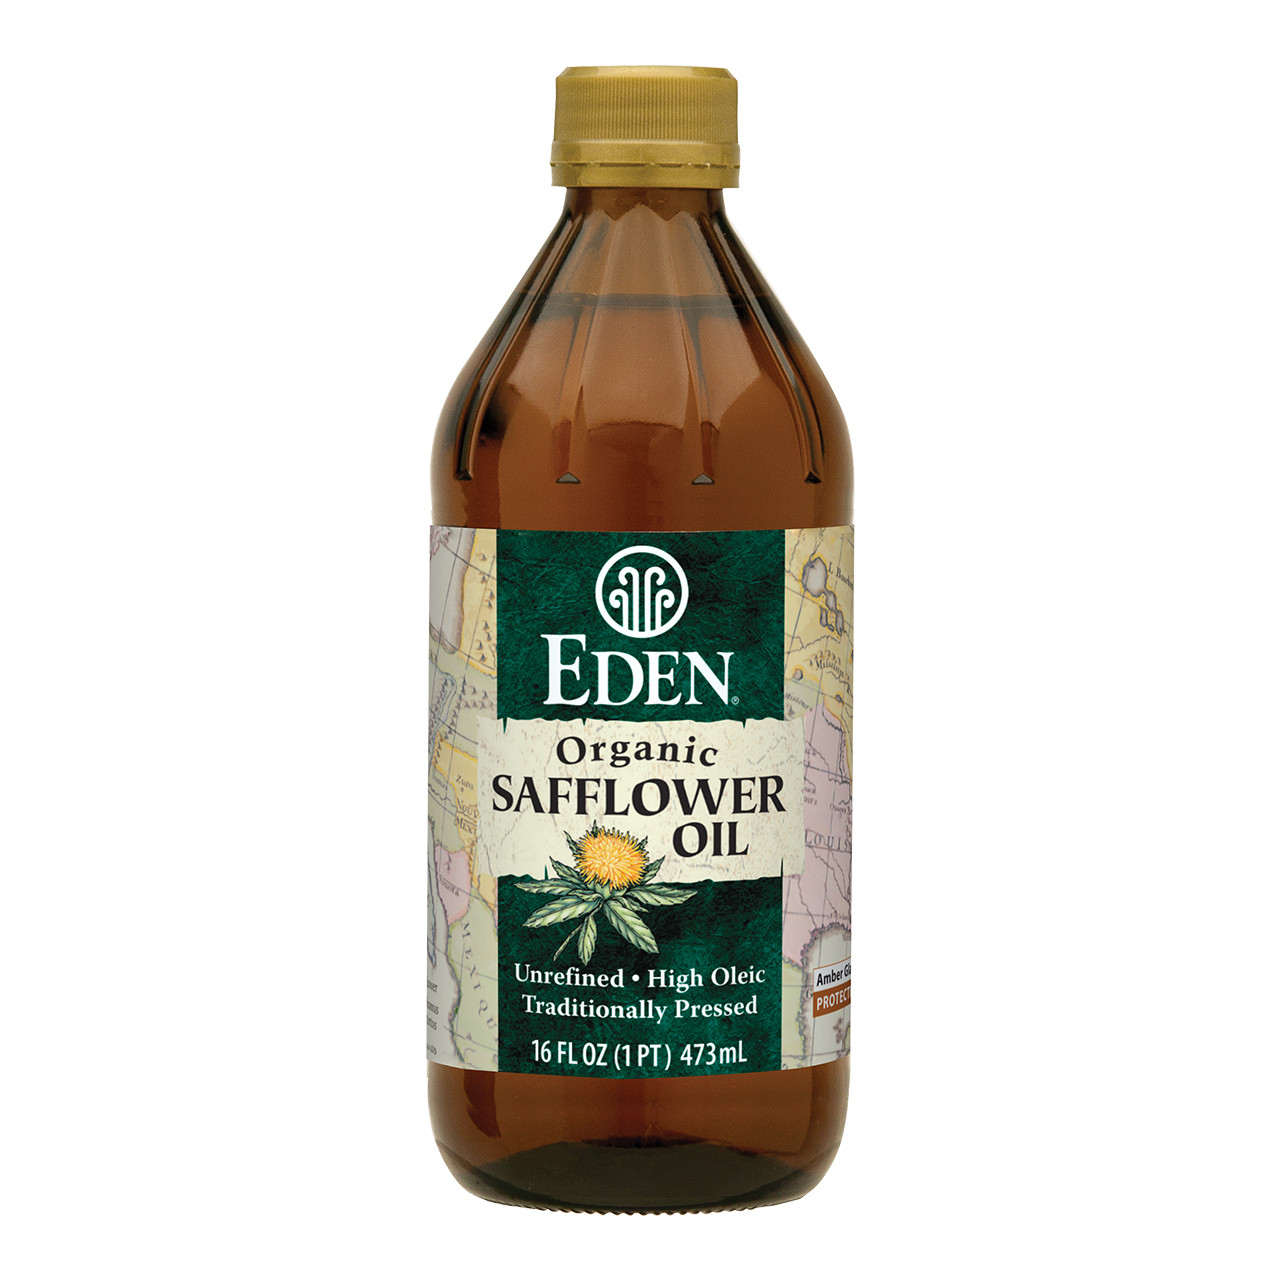 Safflower Oil - High Oleic, Organic - 16 fl oz